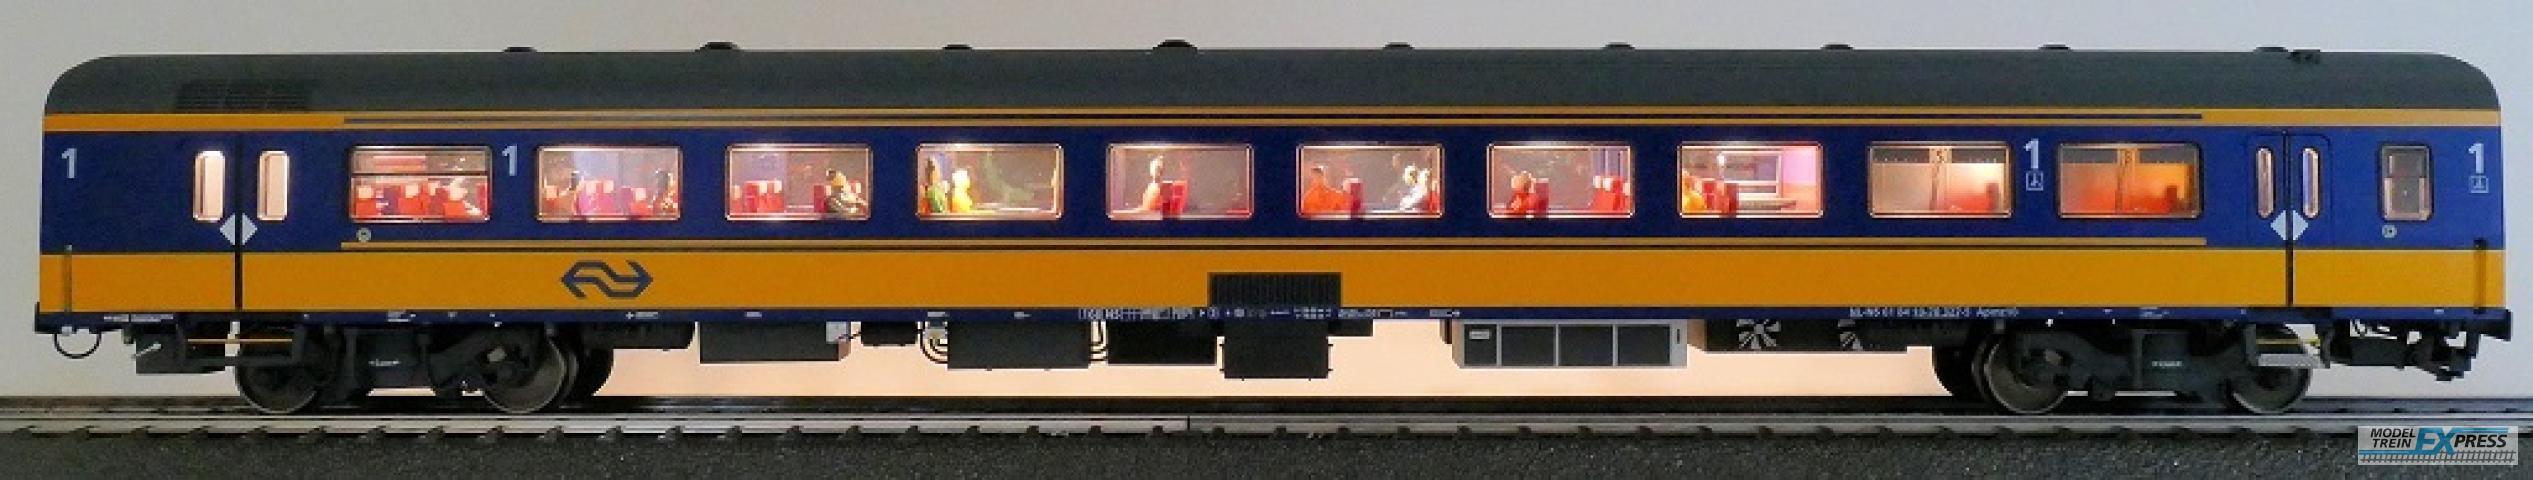 Exact-train 11153 NS ICRm Amsterdam - Breda für den Inlandseinsatz Reisezugwagen Apmz10 ( Farbe Gelb / Blau) mit Beleuchtung und Figuren, Ep. VI